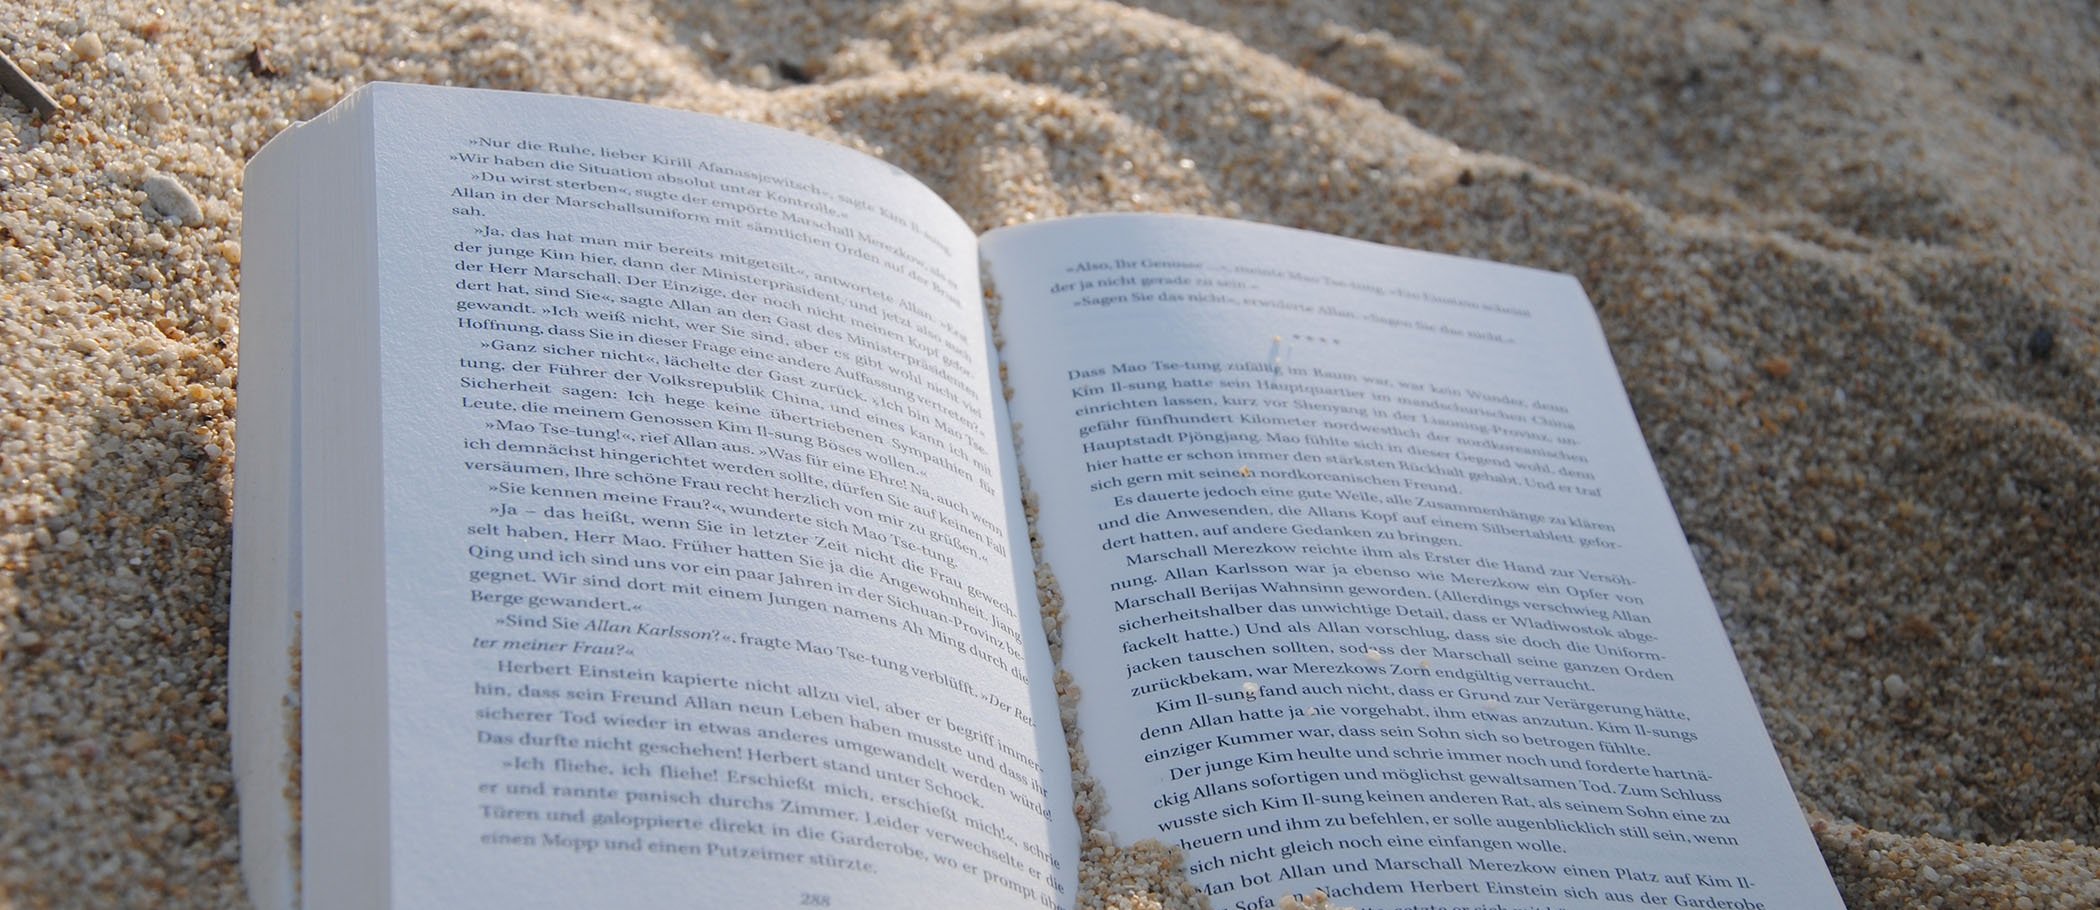 Un libro sobre arena de playa